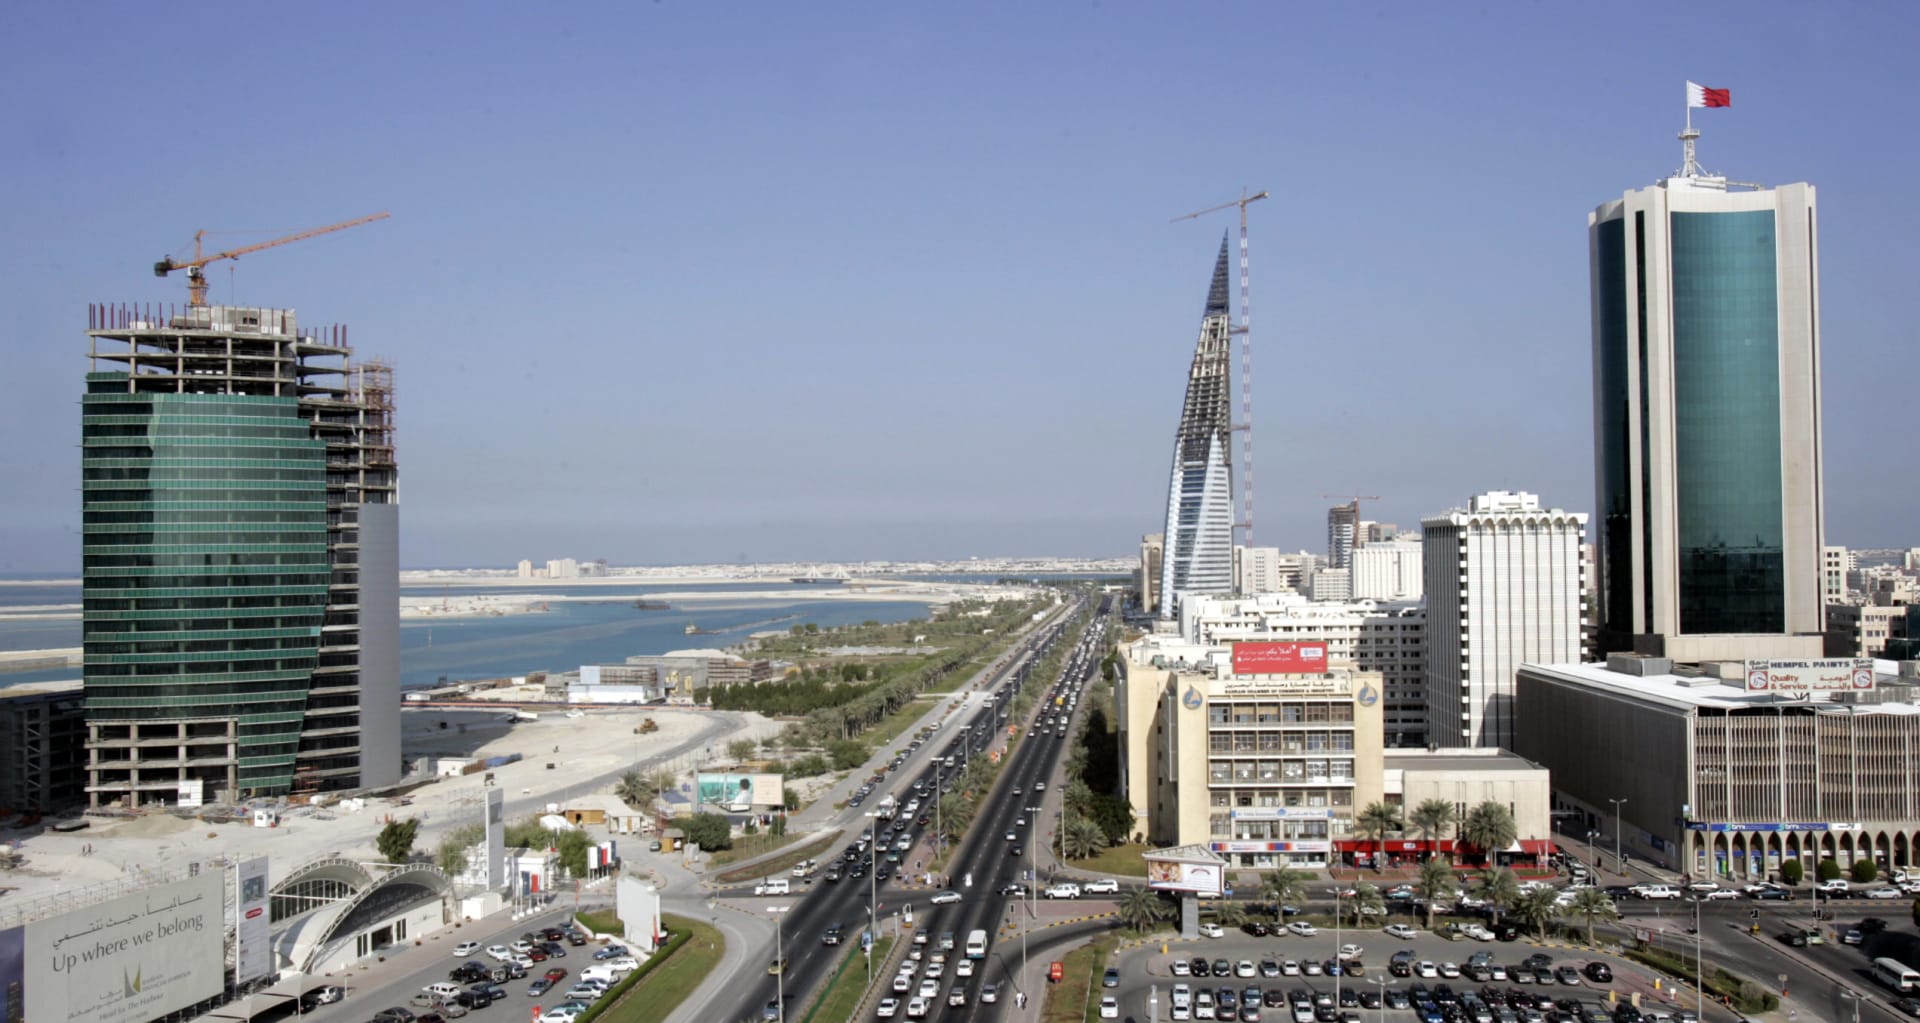 بعد الدعم الخليجي..البحرين تقترب من "القيمة المضافة" وتفتح باب التقاعد الاختياري